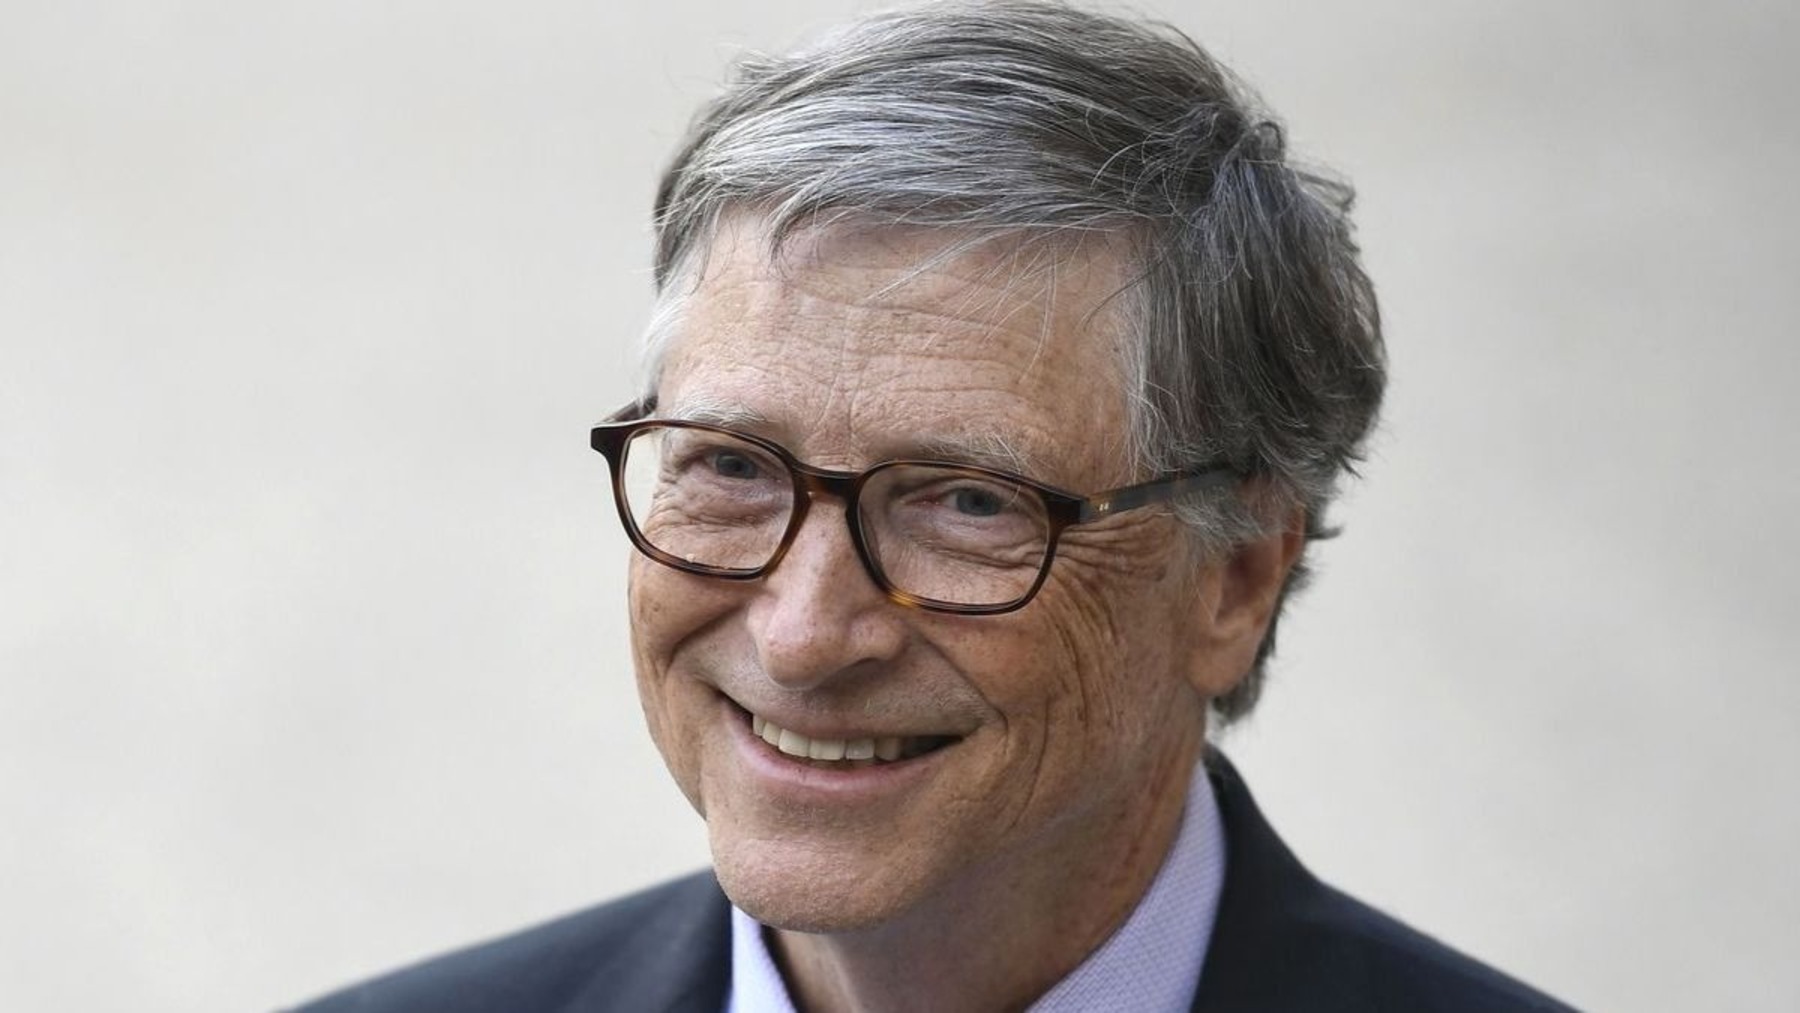 El increíble truco de Bill Gates para reducir el estrés y ser más productivo